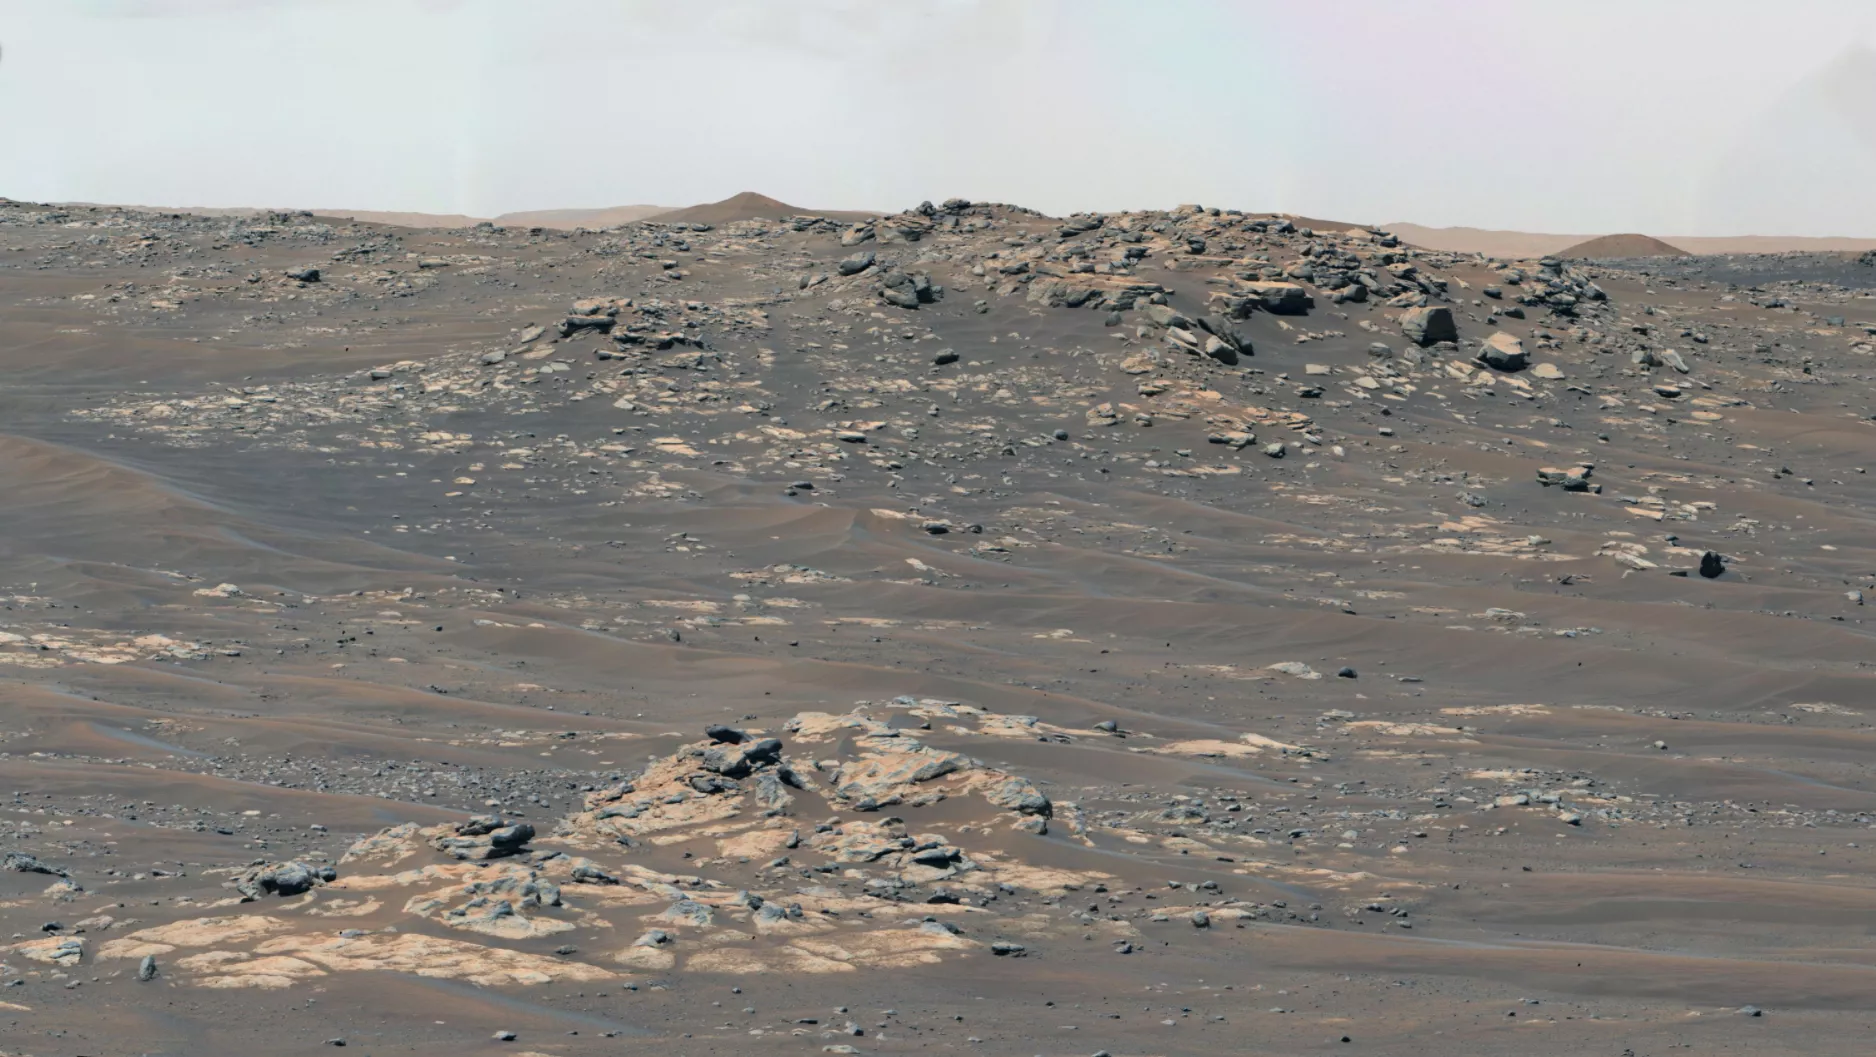 Марсоход сделал панорамное фото поверхности "Красной планеты"